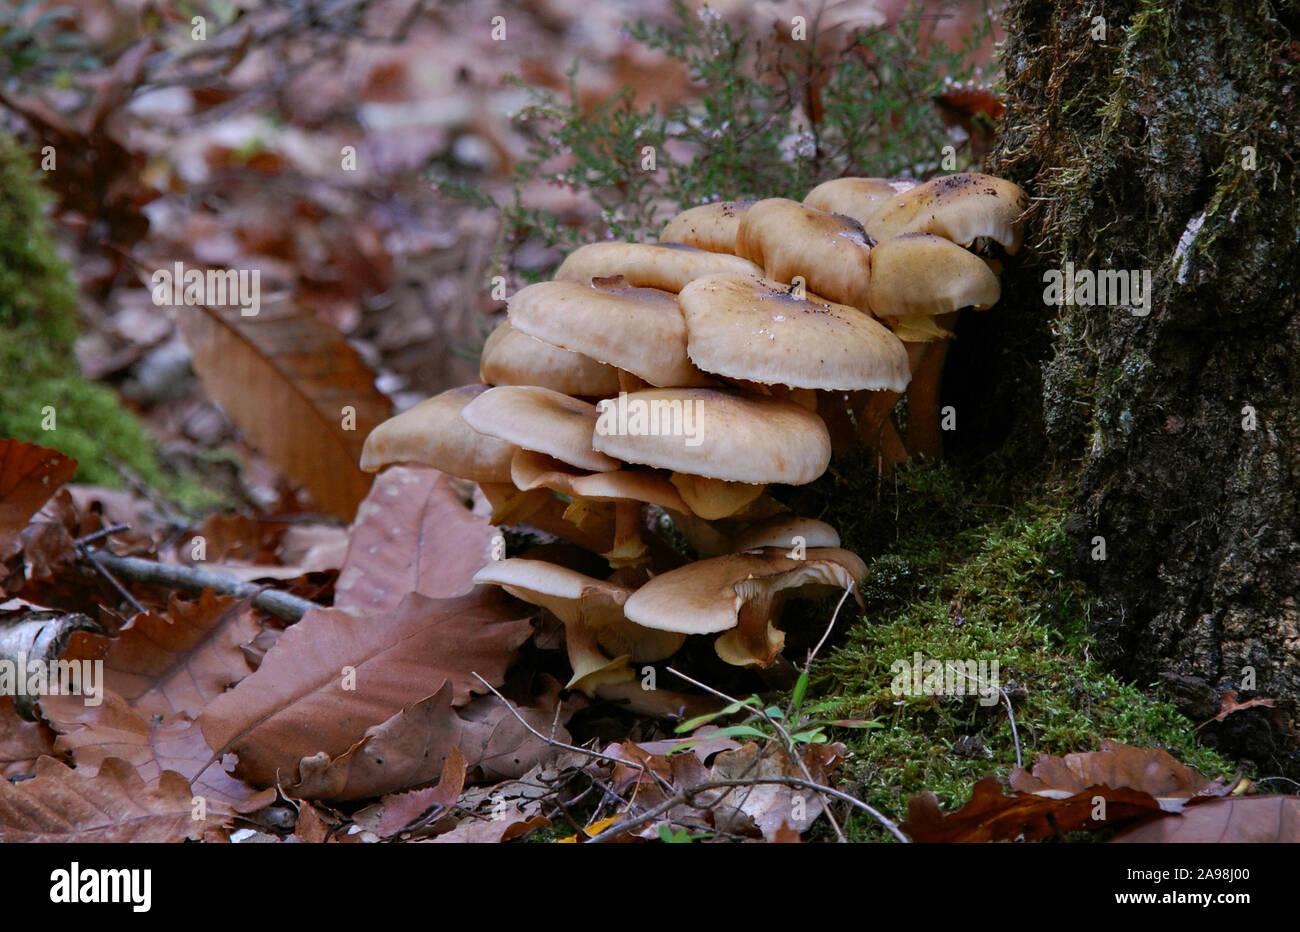 Close-up su una grande famiglia di funghi rannicchiò contro un albero in una foresta di Touraine, Francia. La Famille de champignon blottis contre onu arbre. Foto Stock